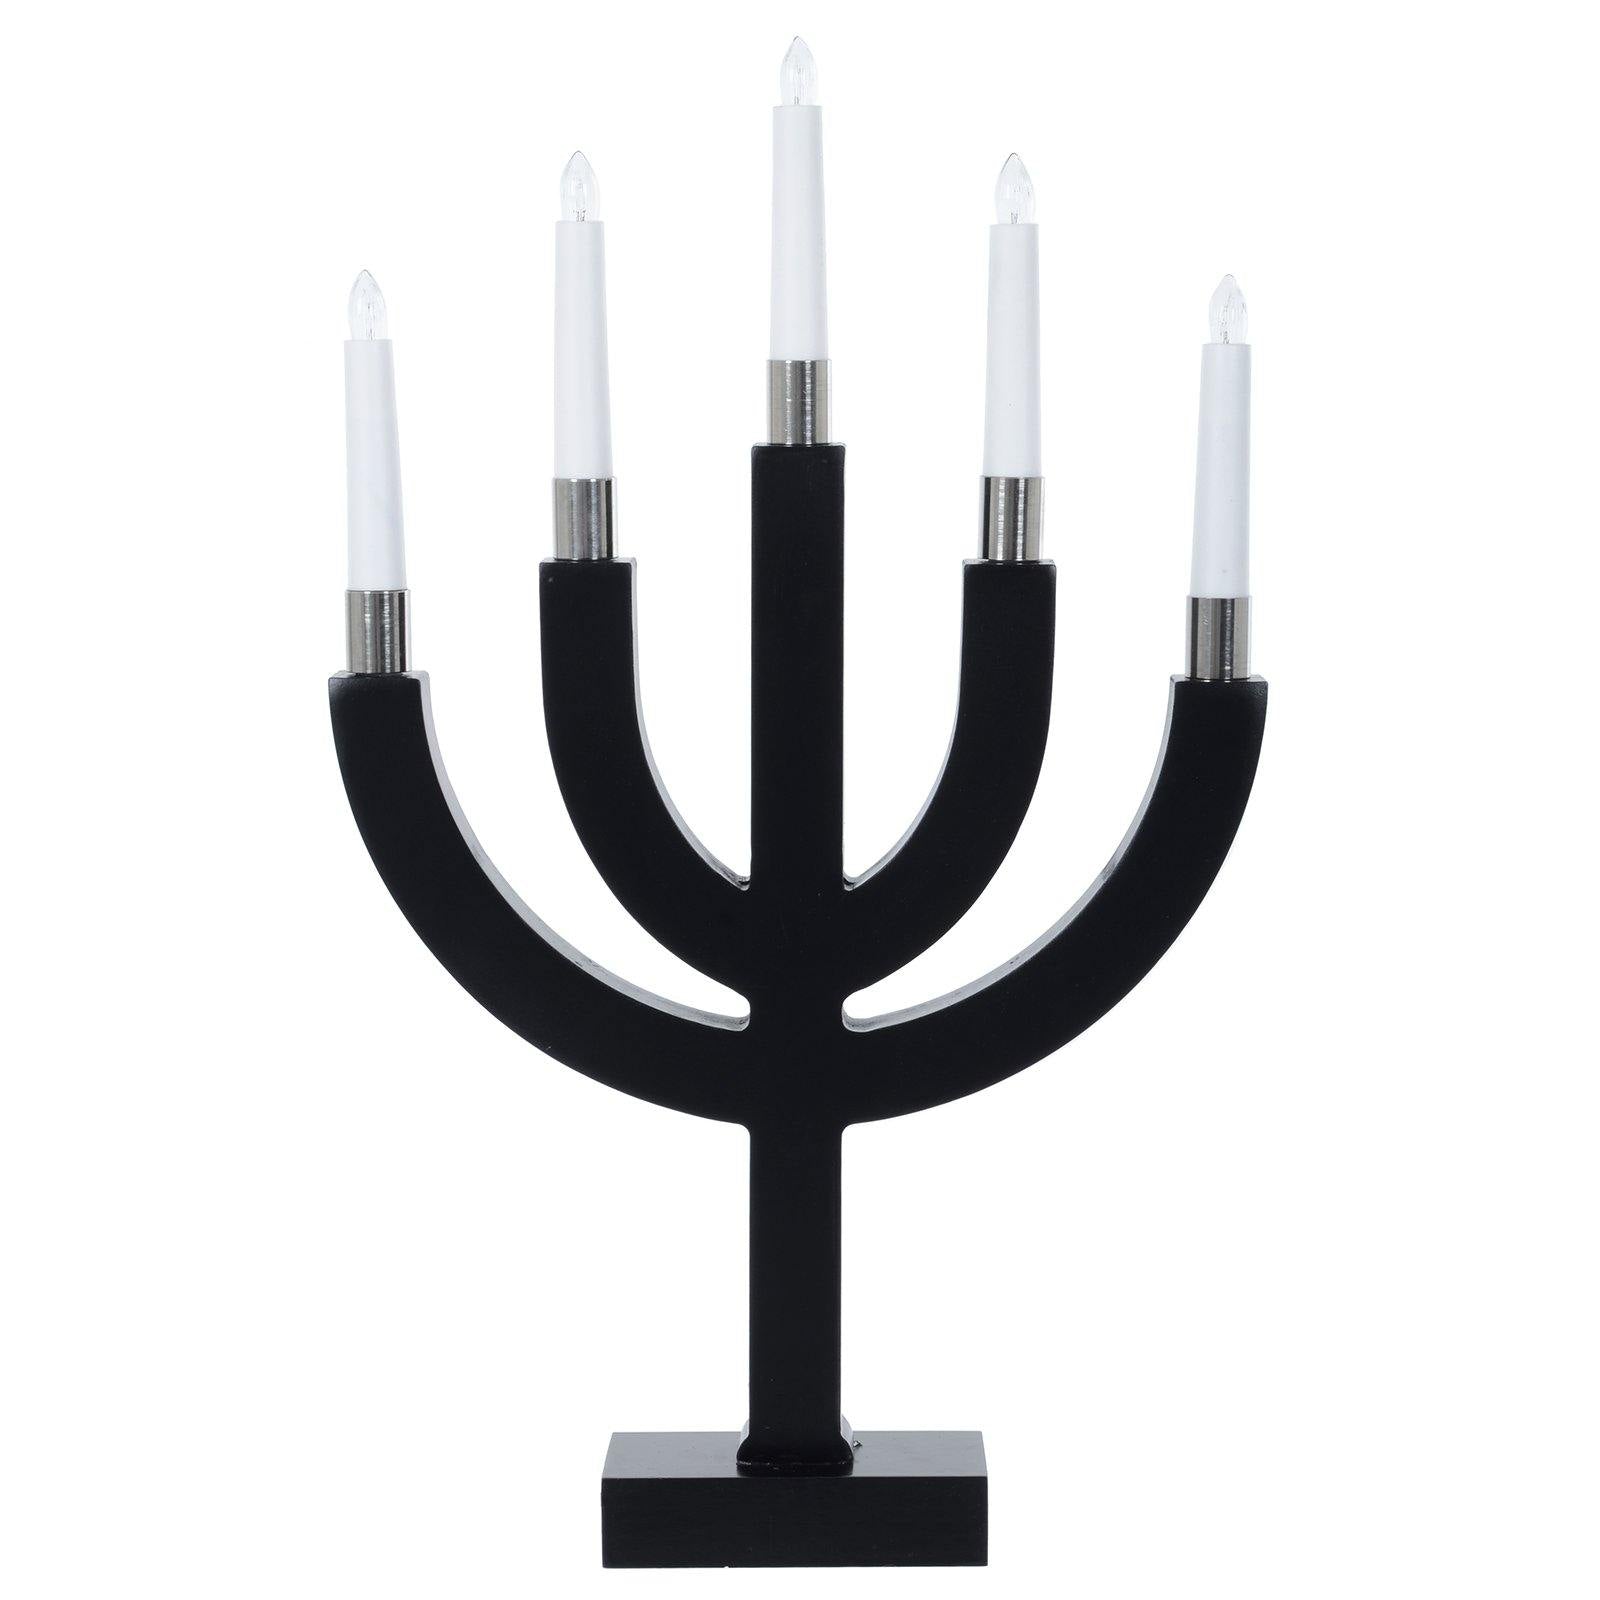 Mr Crimbo 12" Christmas Candle Bridge 5 Light Decoration - MrCrimbo.co.uk -XS6523 - Black -candles